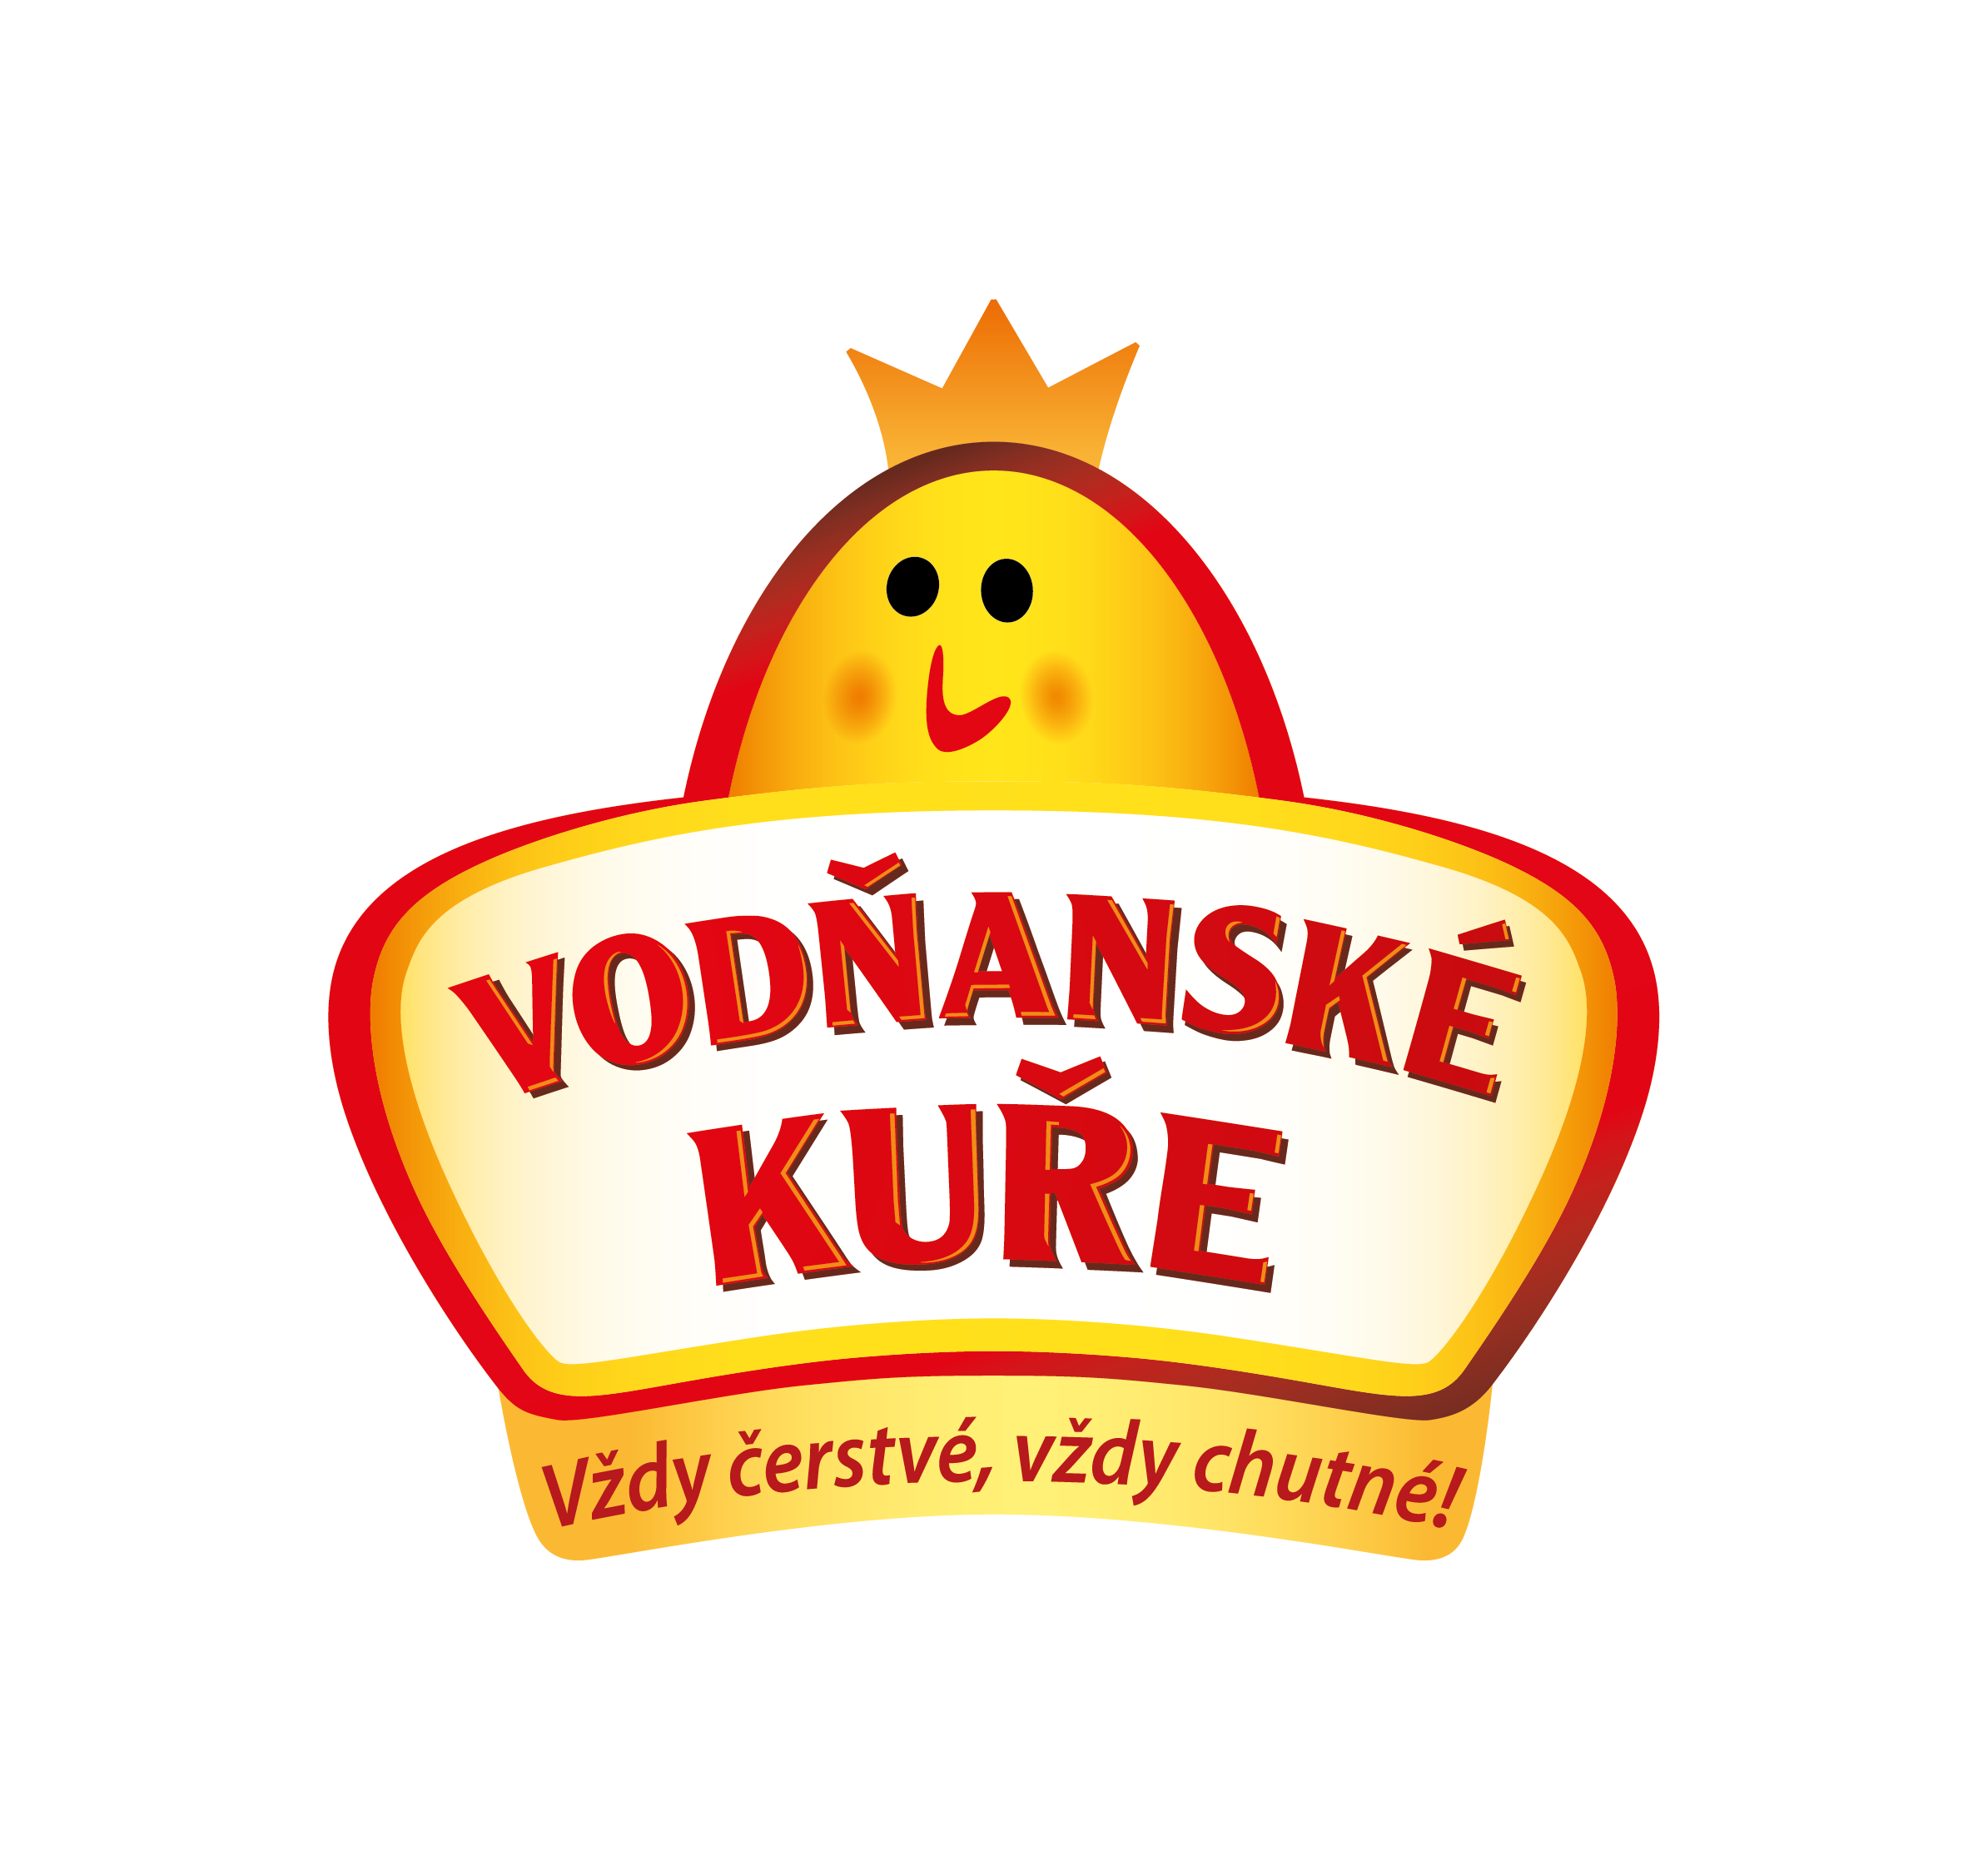 vodnanske-kure-logo-prekres-outl.png